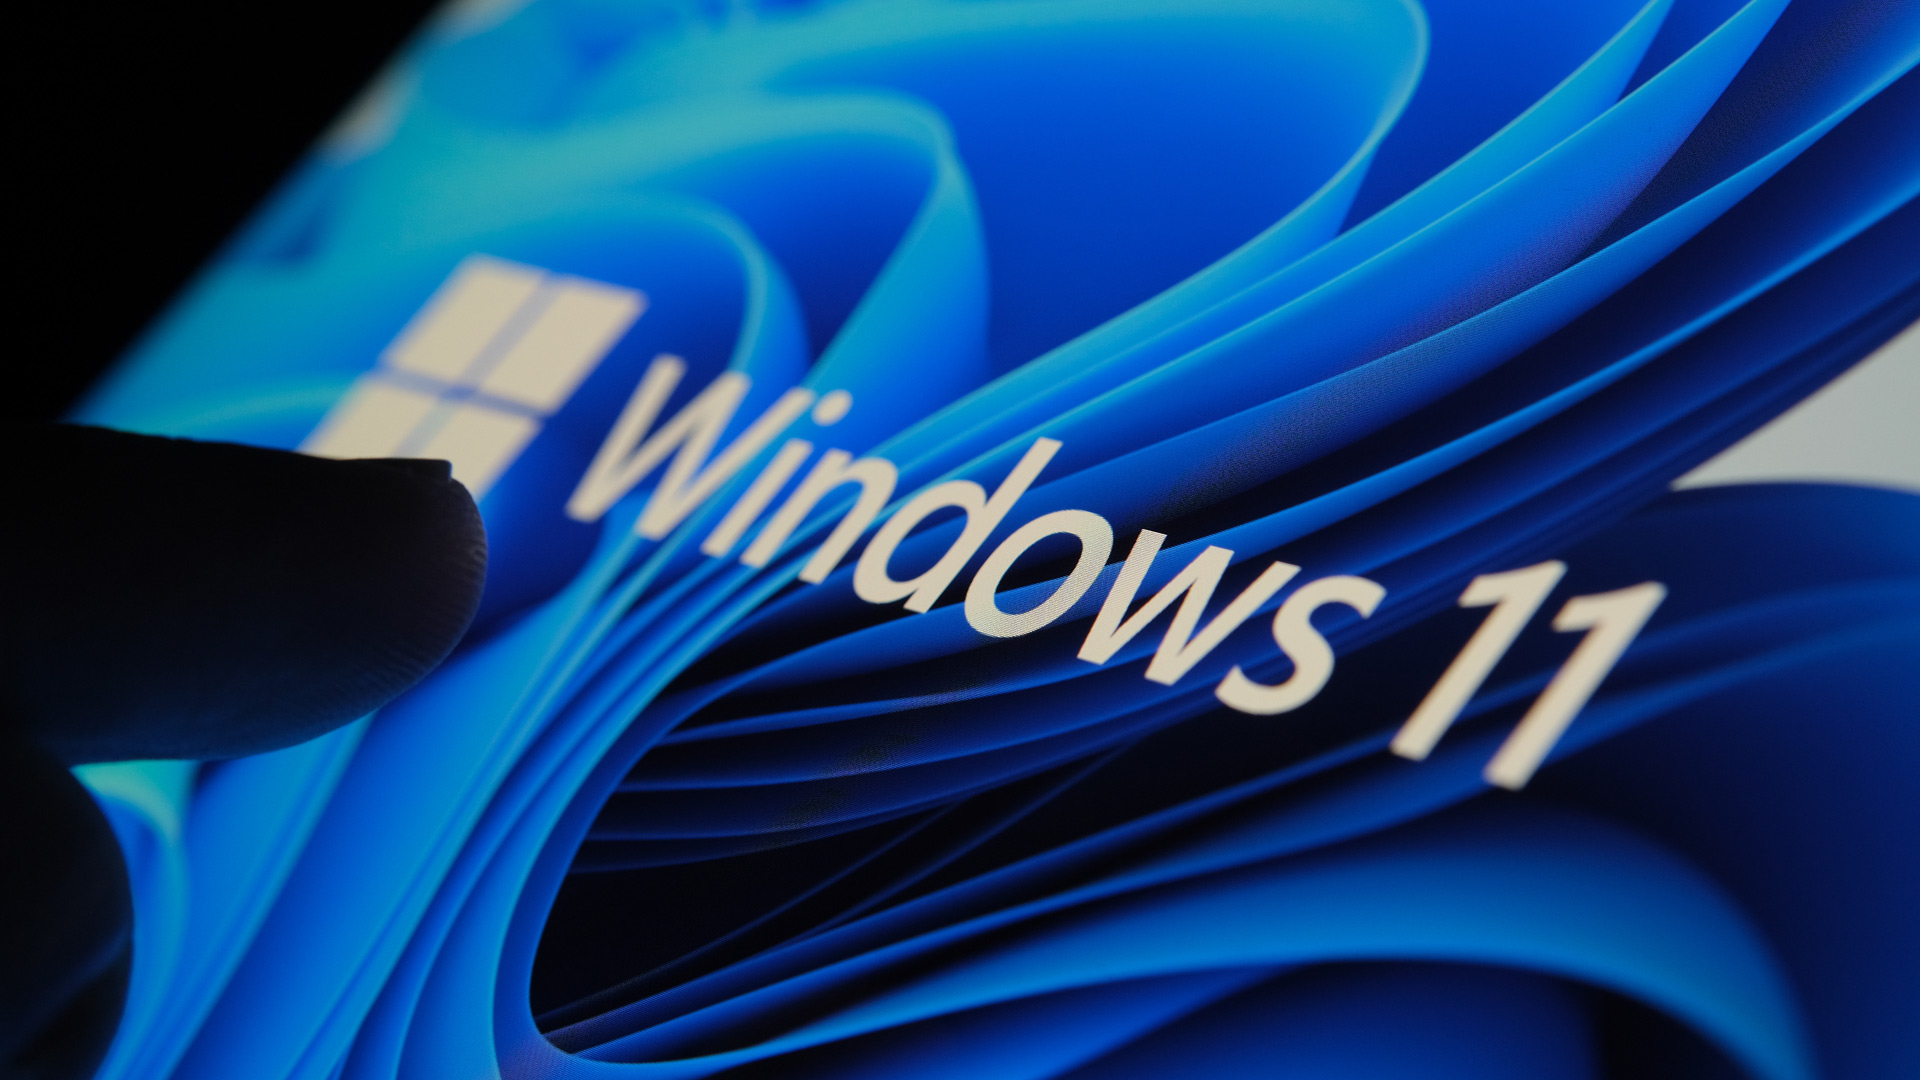 Нравится вам это или нет, но панель задач Windows 11 никуда не делась — и она постоянно улучшается